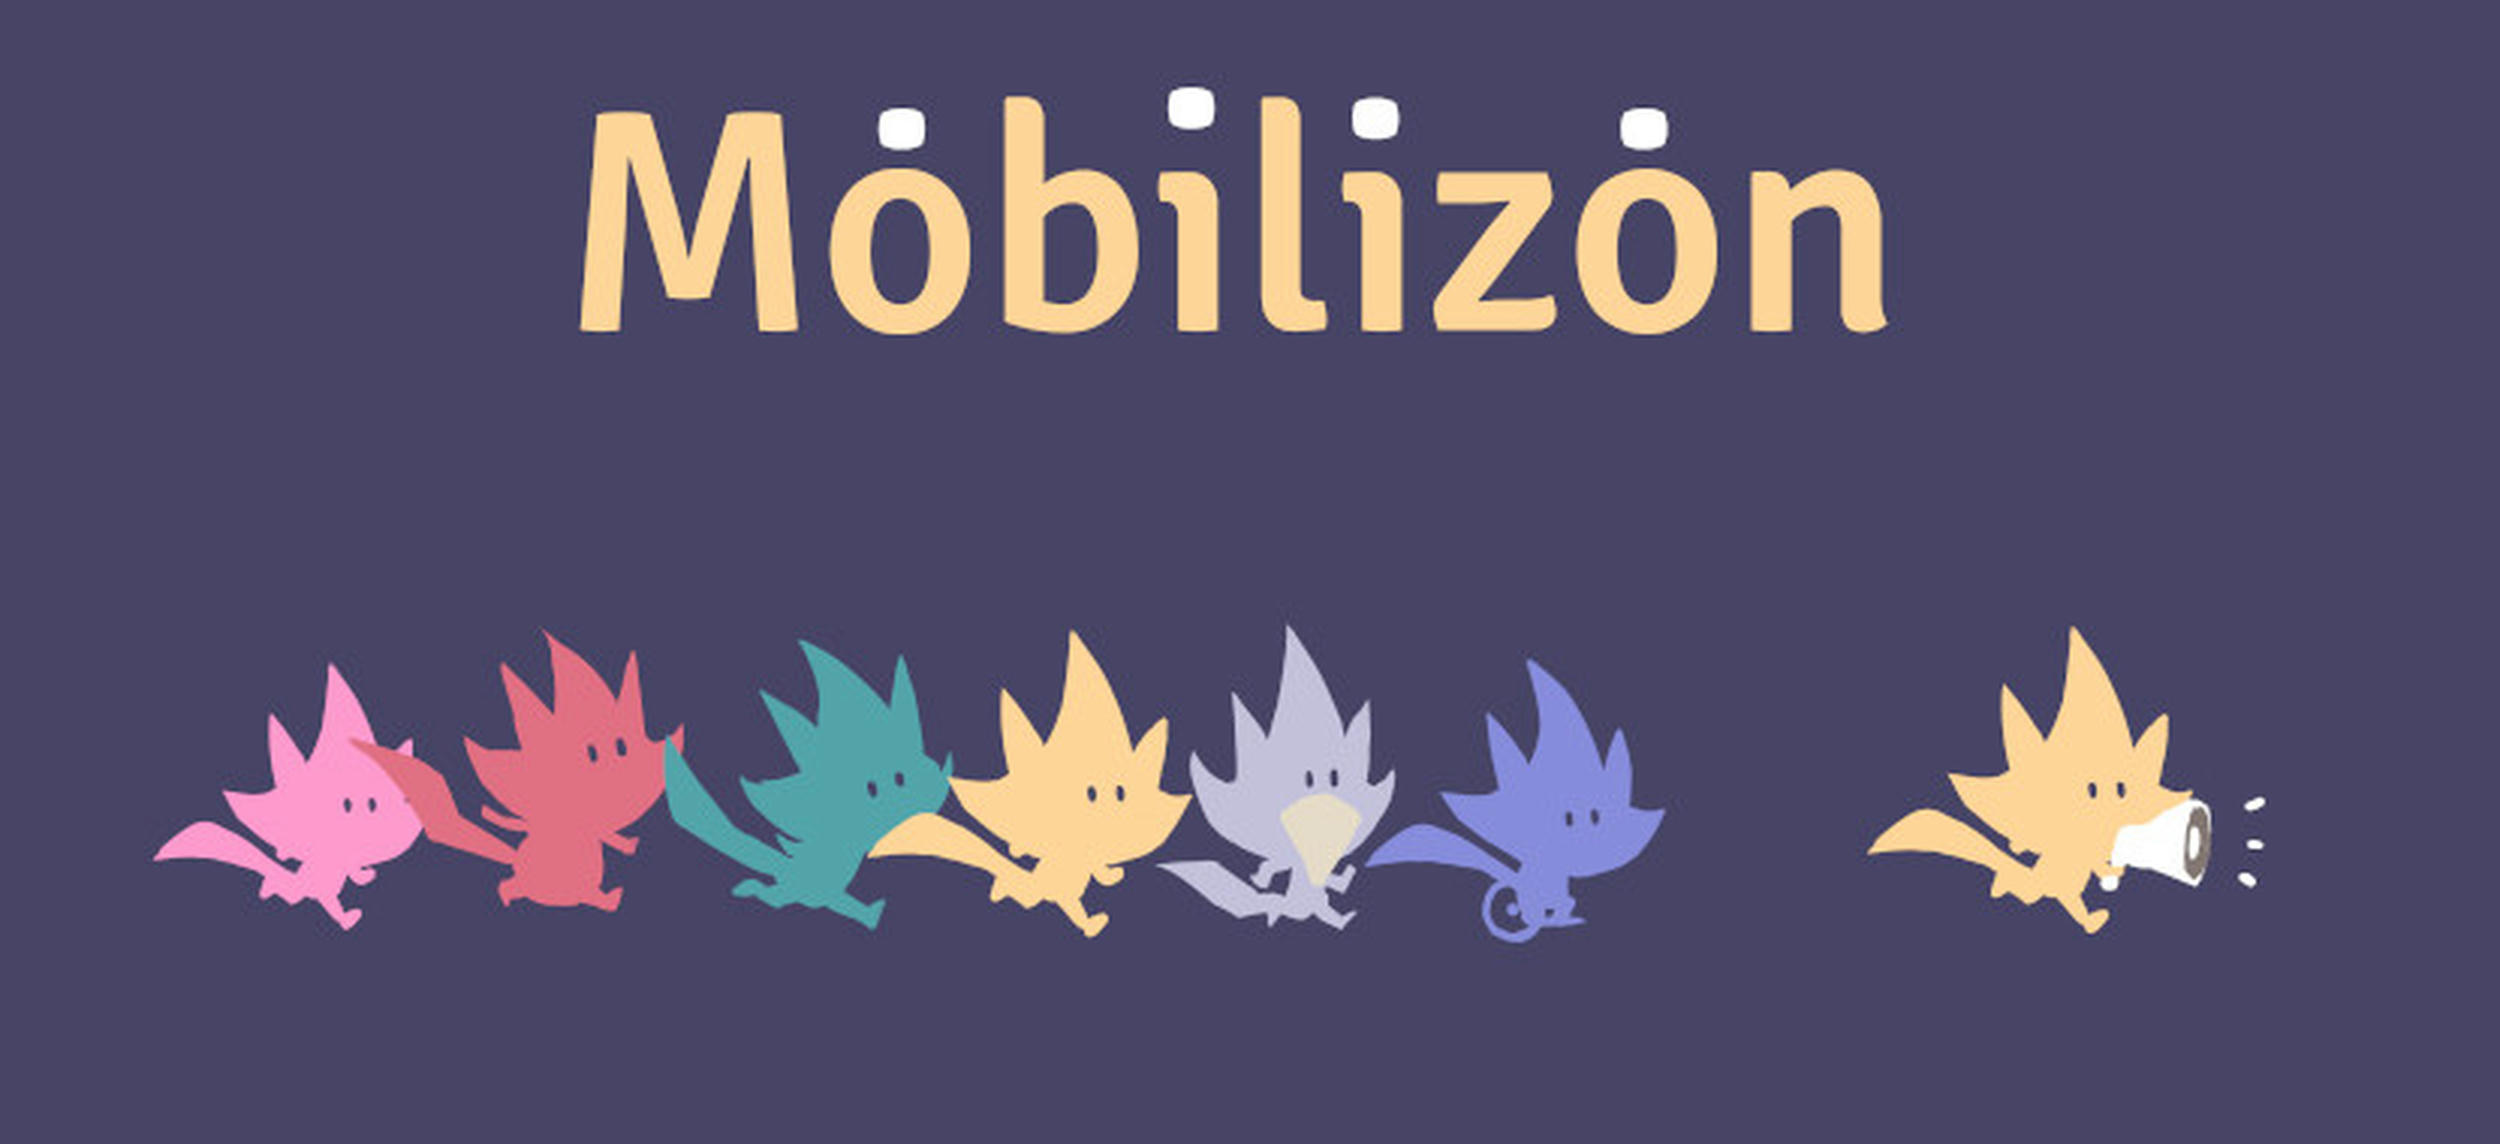 logo de l'application Mobilizon avec des petits renards colorés qui suivent un renard avec un porte voix.